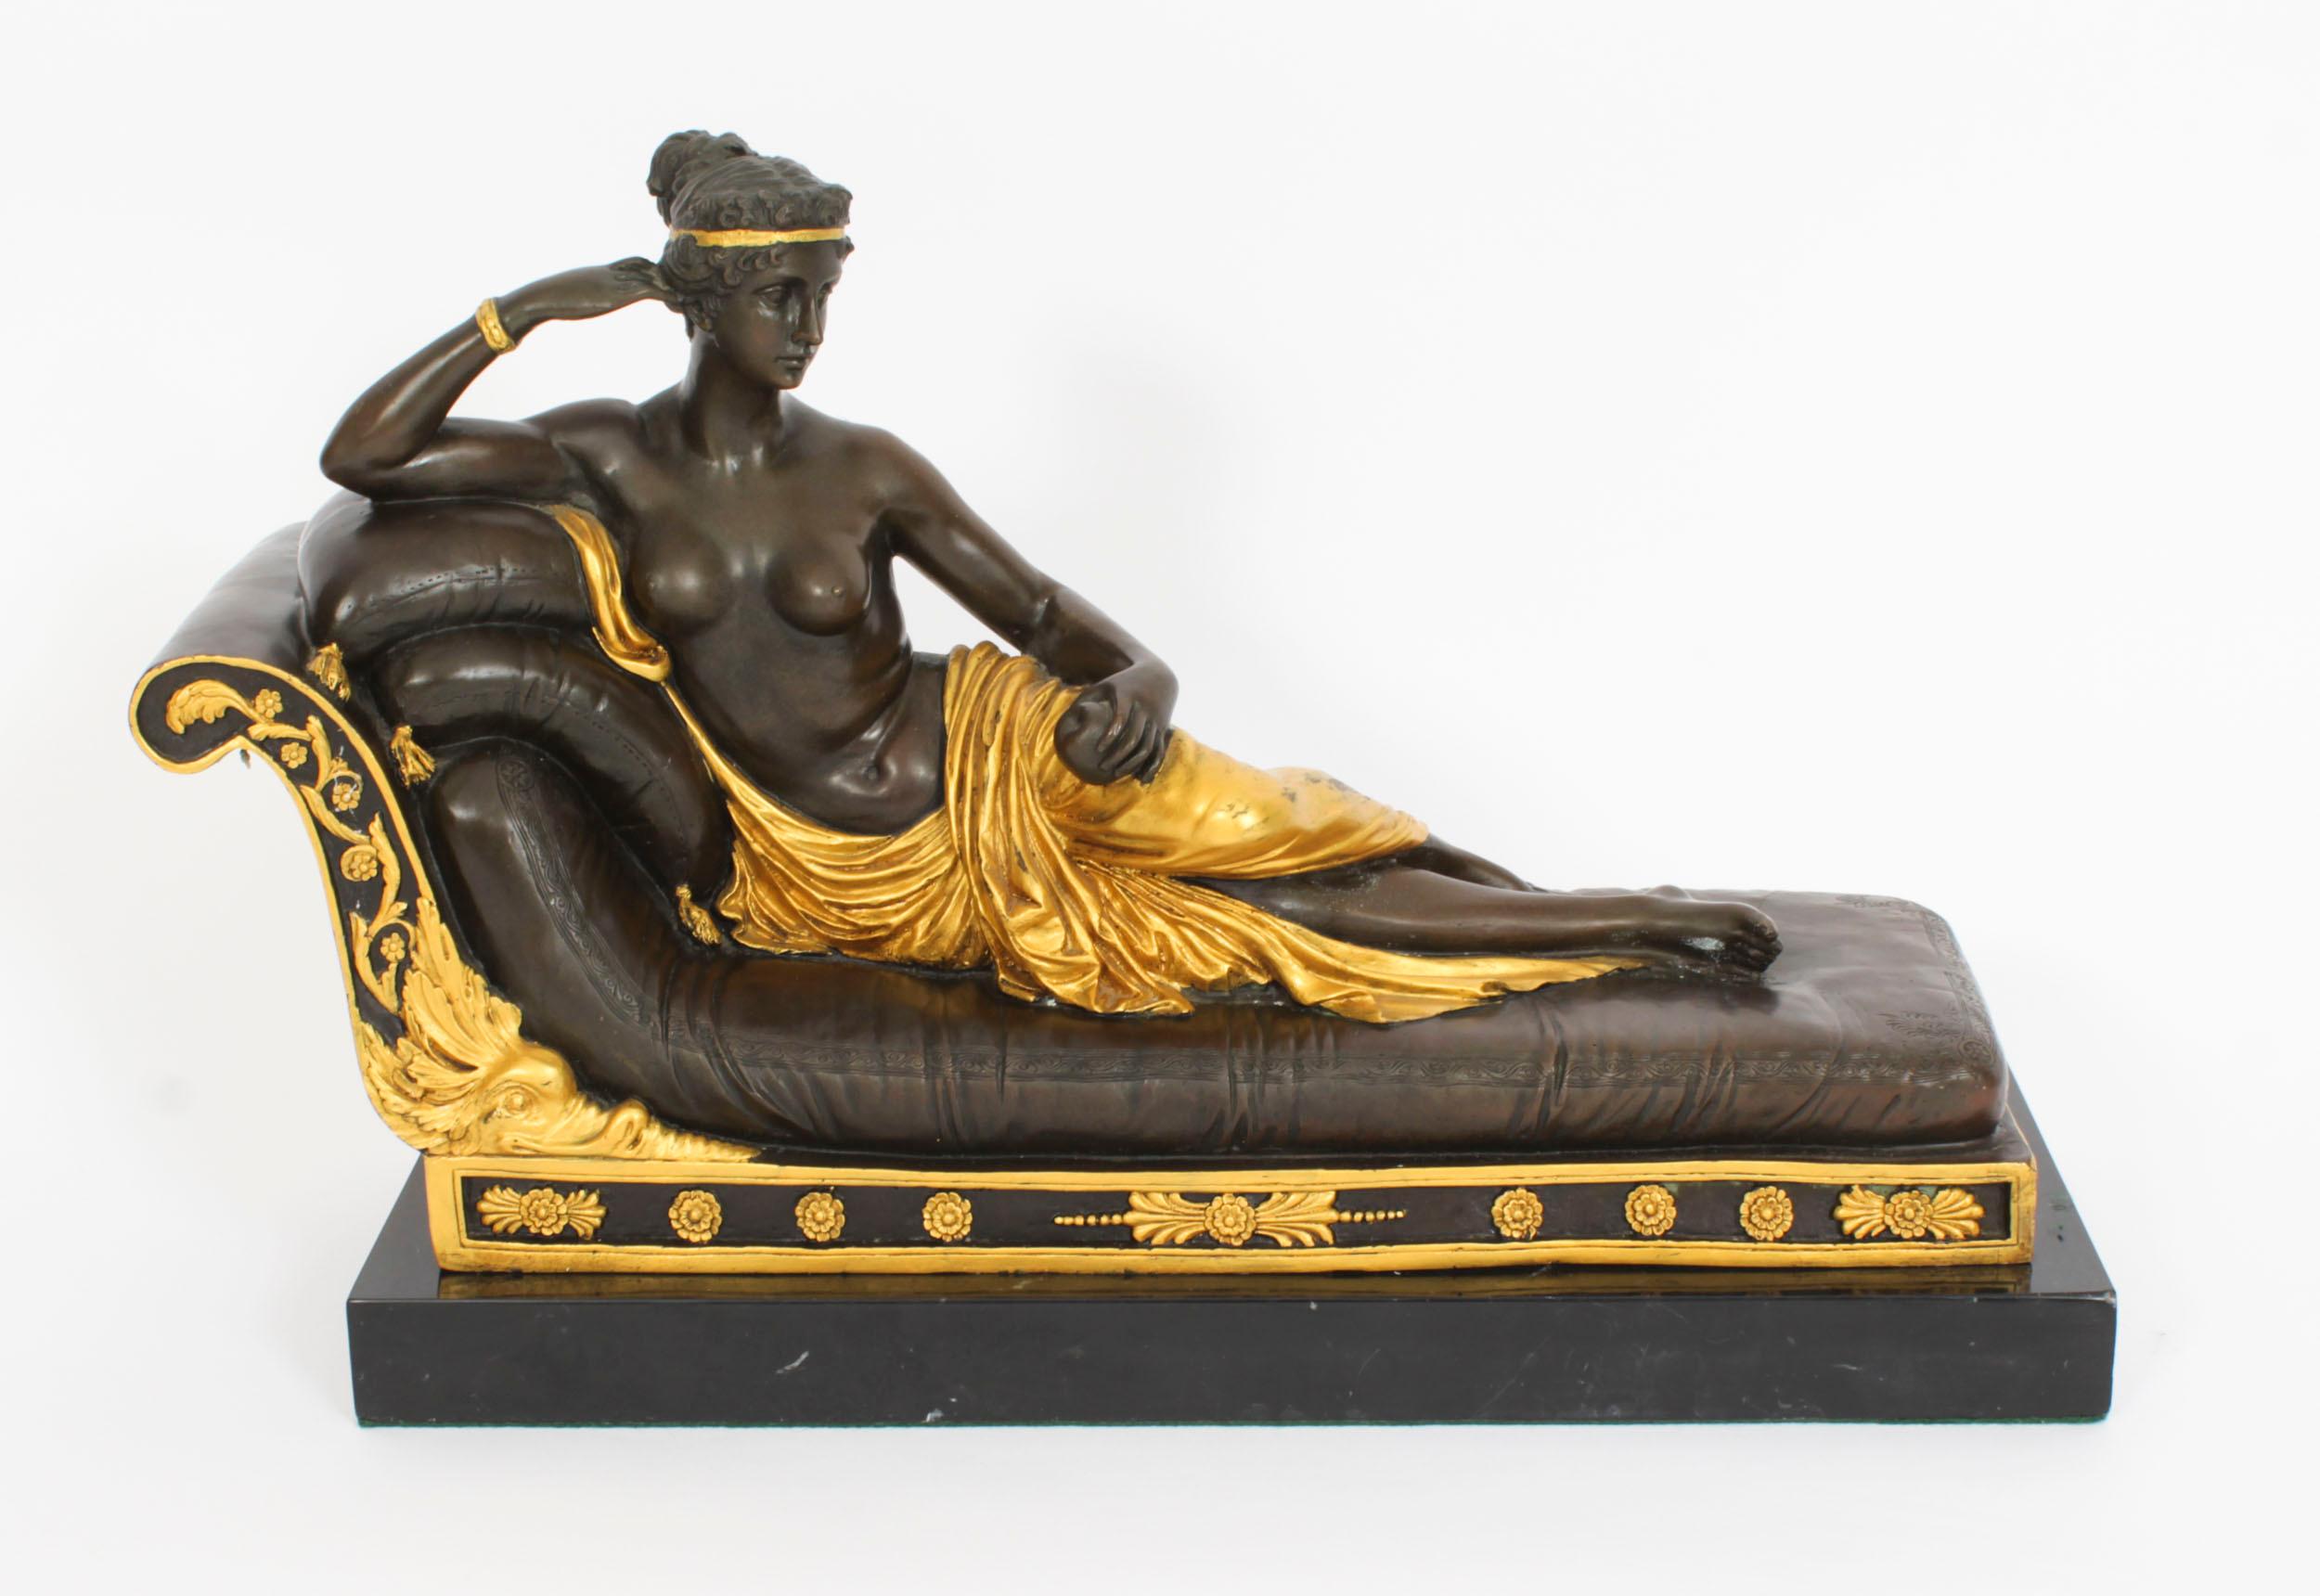 Eine große neoklassizistische Bronzeskulptur von Antonio Canova, die Pauline Bonaparte als Venus Victrix darstellt, signiert und datiert aus dem Jahr  Ende des 20. Jahrhunderts.
Sie ist als halbnackte Schönheit auf einer Couch inszeniert, den Kopf